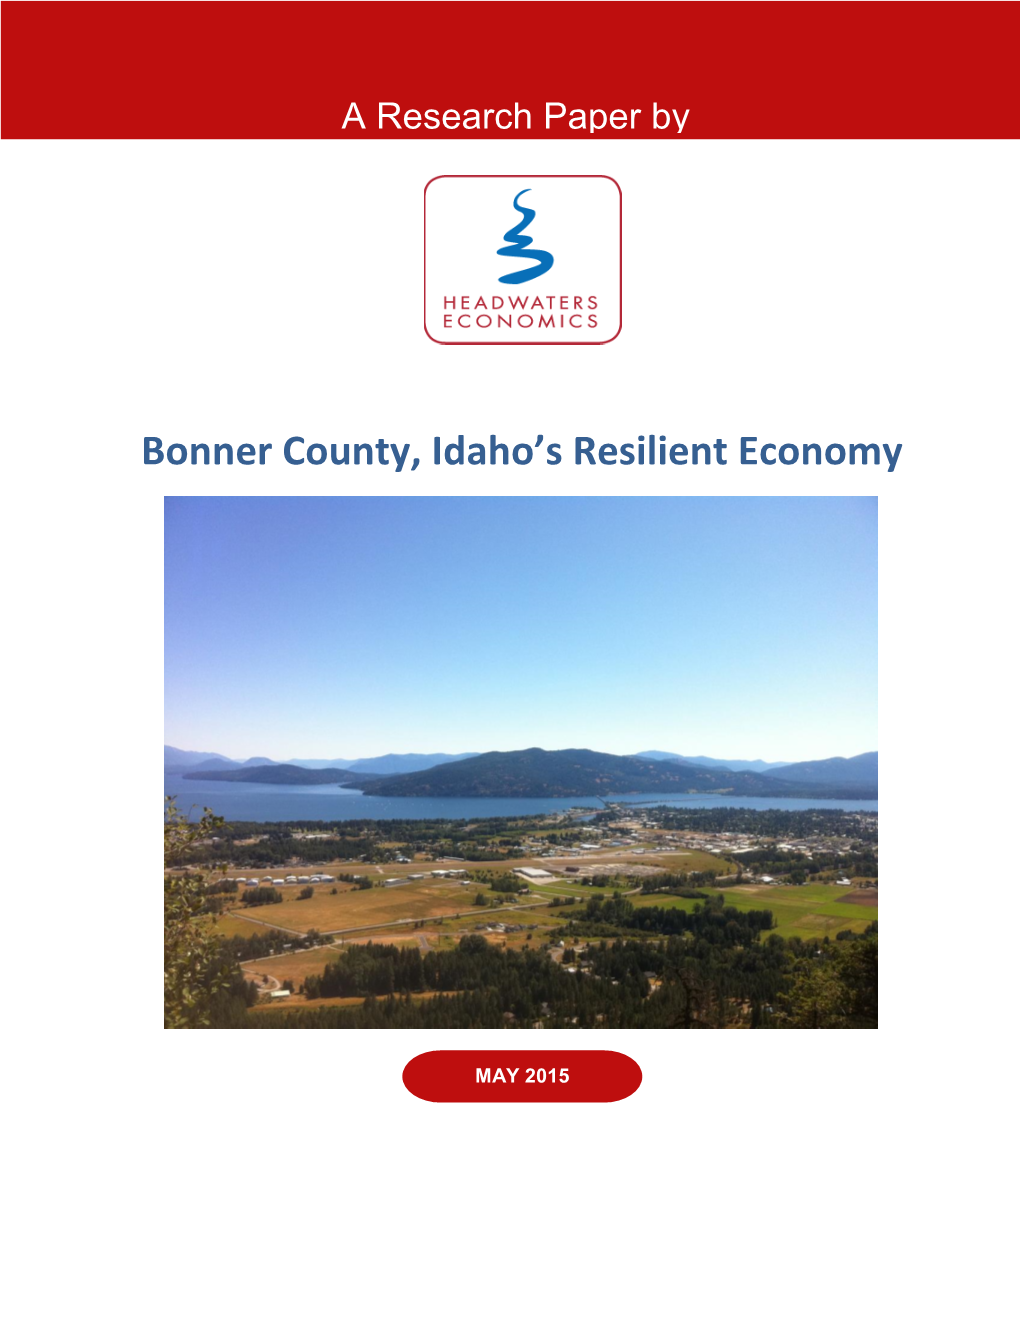 Bonner County, Idaho's Resilient Economy